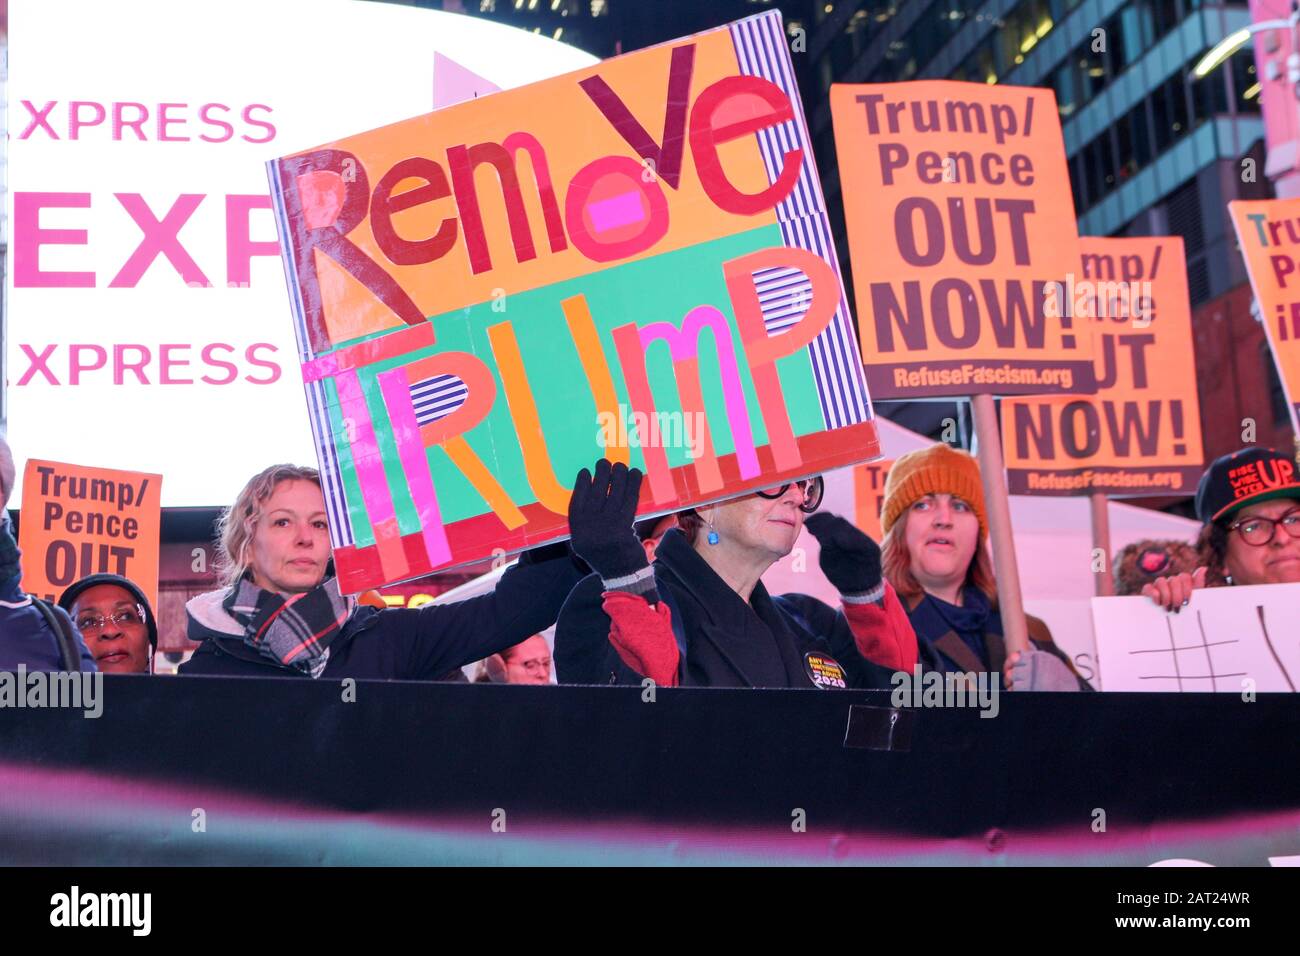 New York, États-Unis. 29 janvier 2020. Les manifestants protestent contre le GOP lors du procès de destitution du président Donald Trump à Times Square, New York, le 29 janvier 2020. (Photo De Ryan Rahman/Pacific Press) Crédit: Pacific Press Agency/Alay Live News Banque D'Images